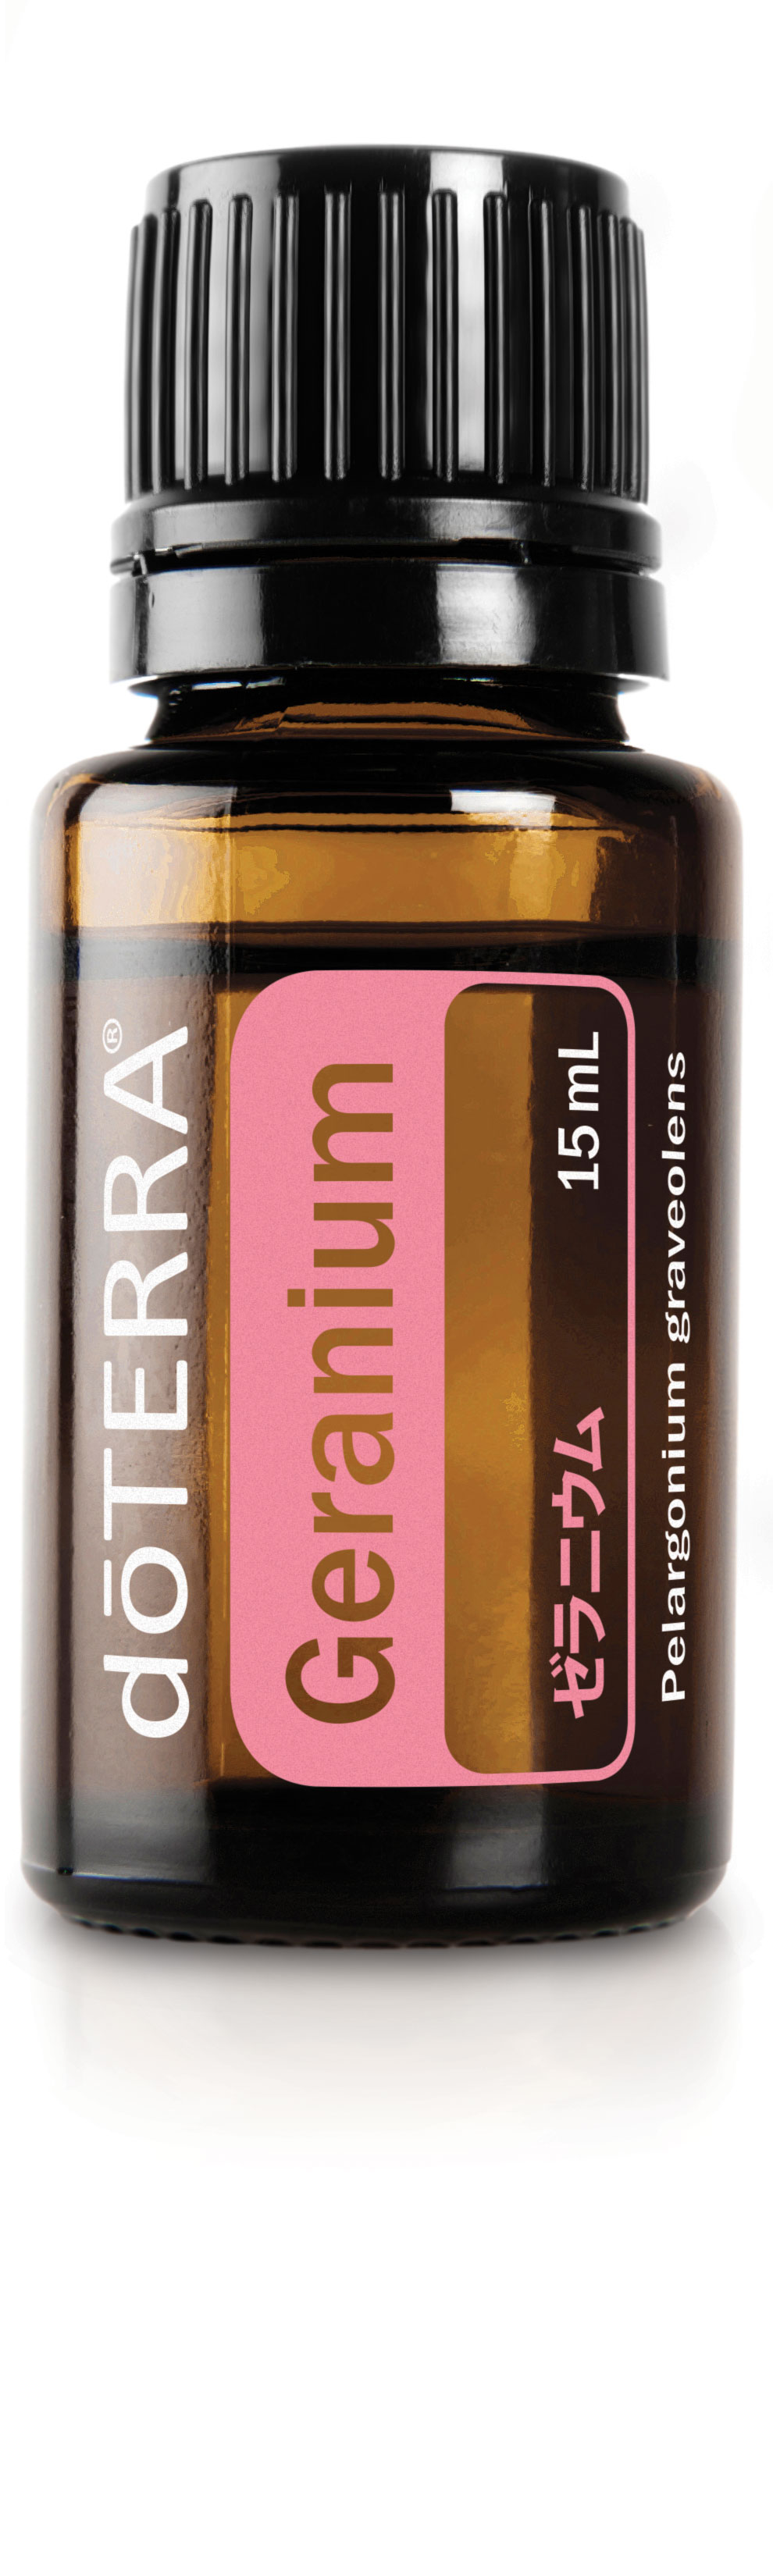 ゼラニウム | doTERRA エッセンシャルオイル | doTERRA Essential Oils